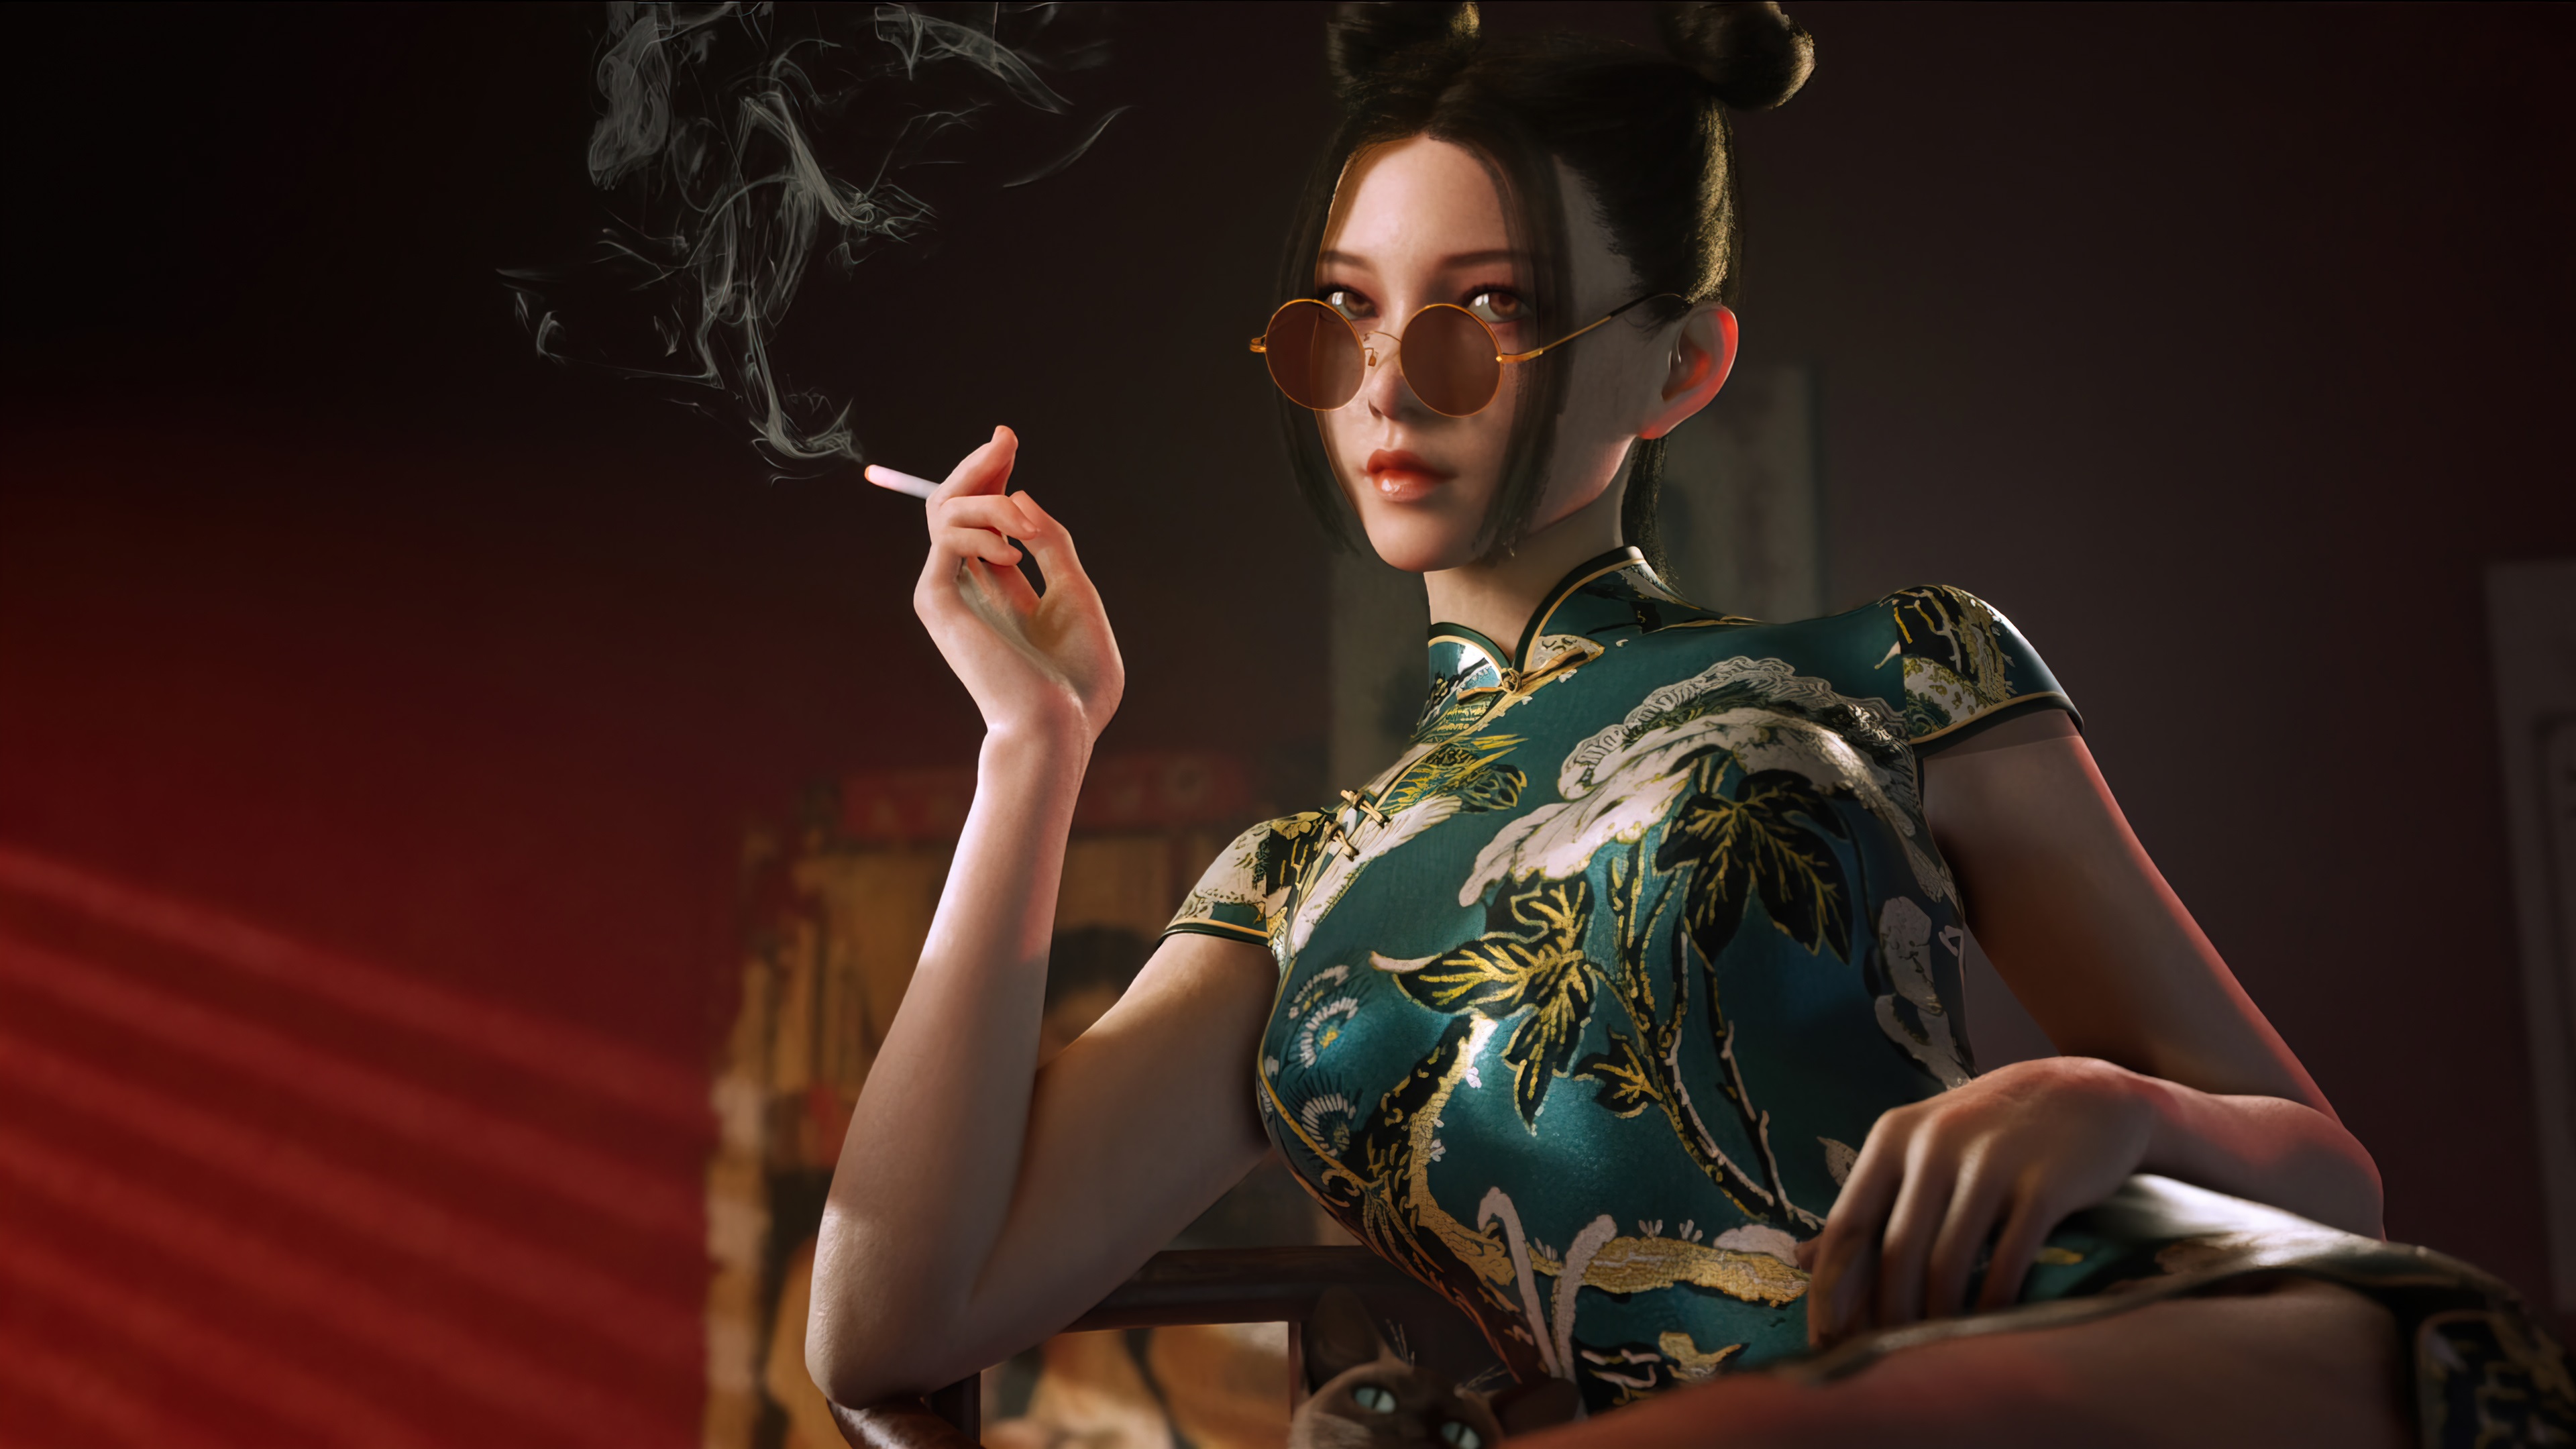 Free download wallpaper Anime, Girl, Chinese, Smoking on your PC desktop